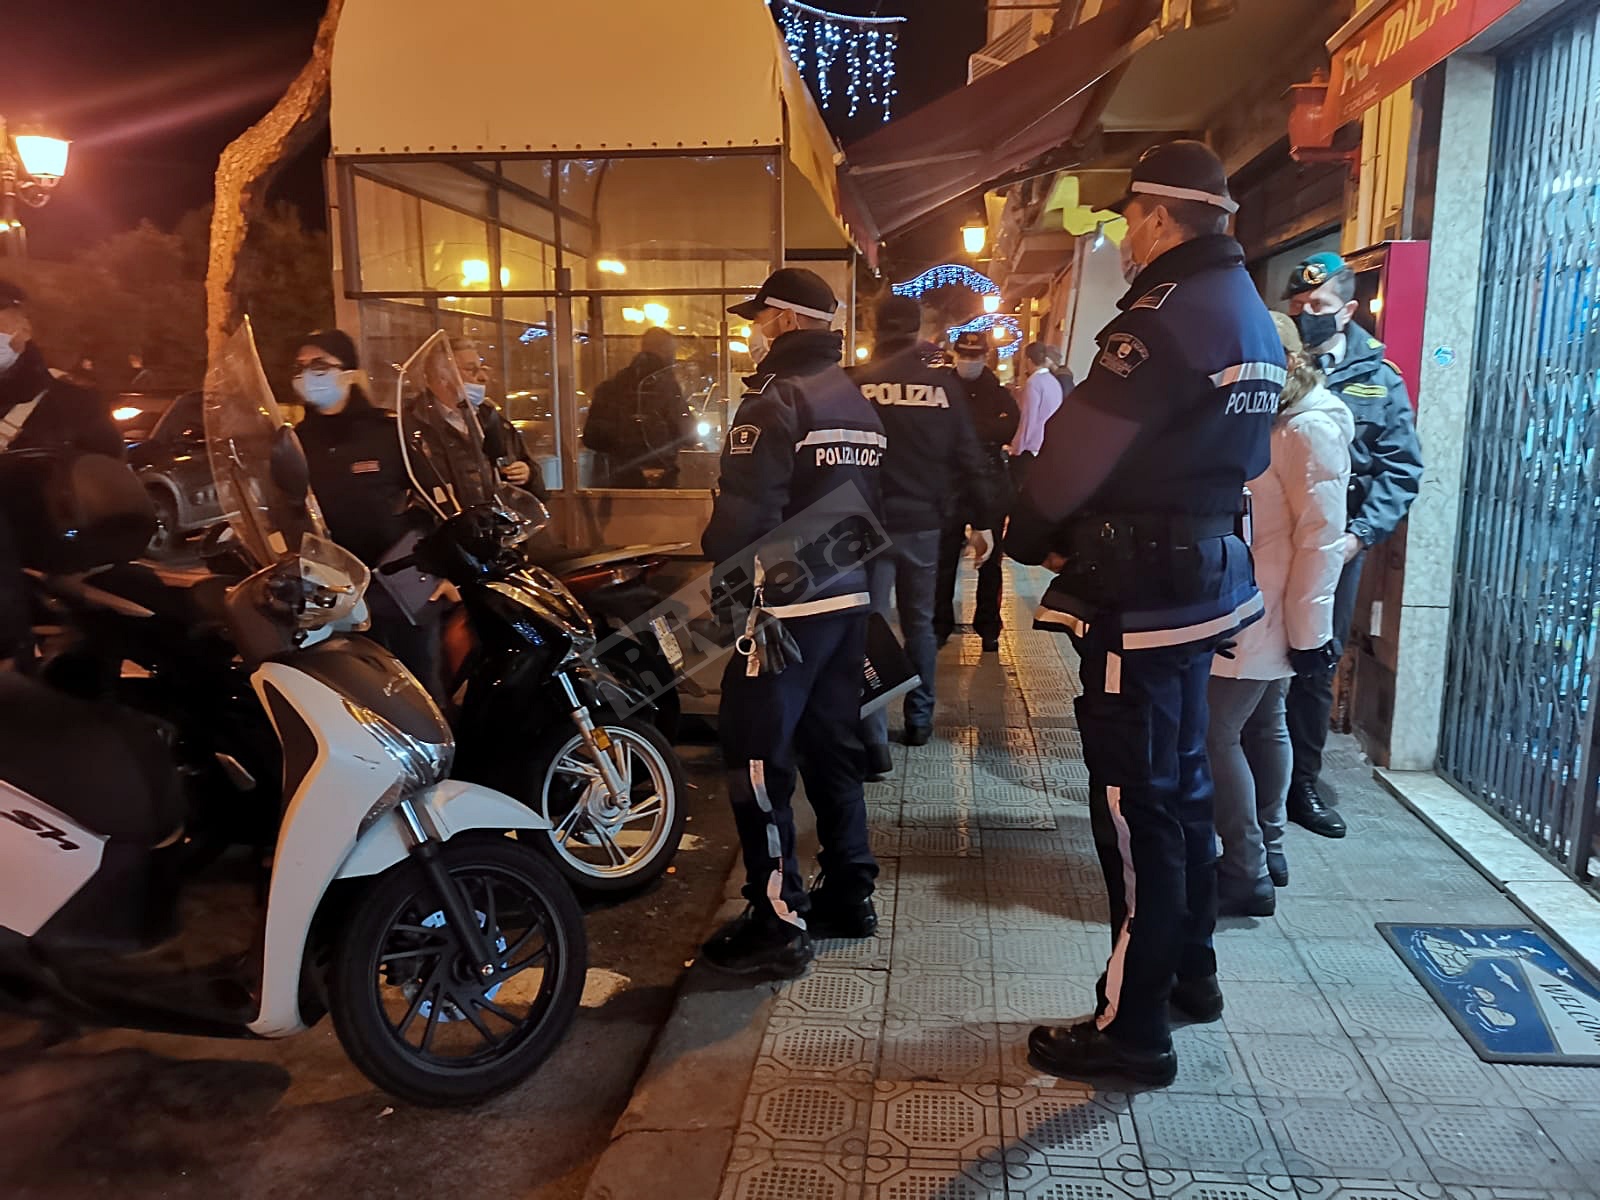 Ioapro Sanremo controlli foze dell'ordine notturna carabinieri polizia municipale polizia_06